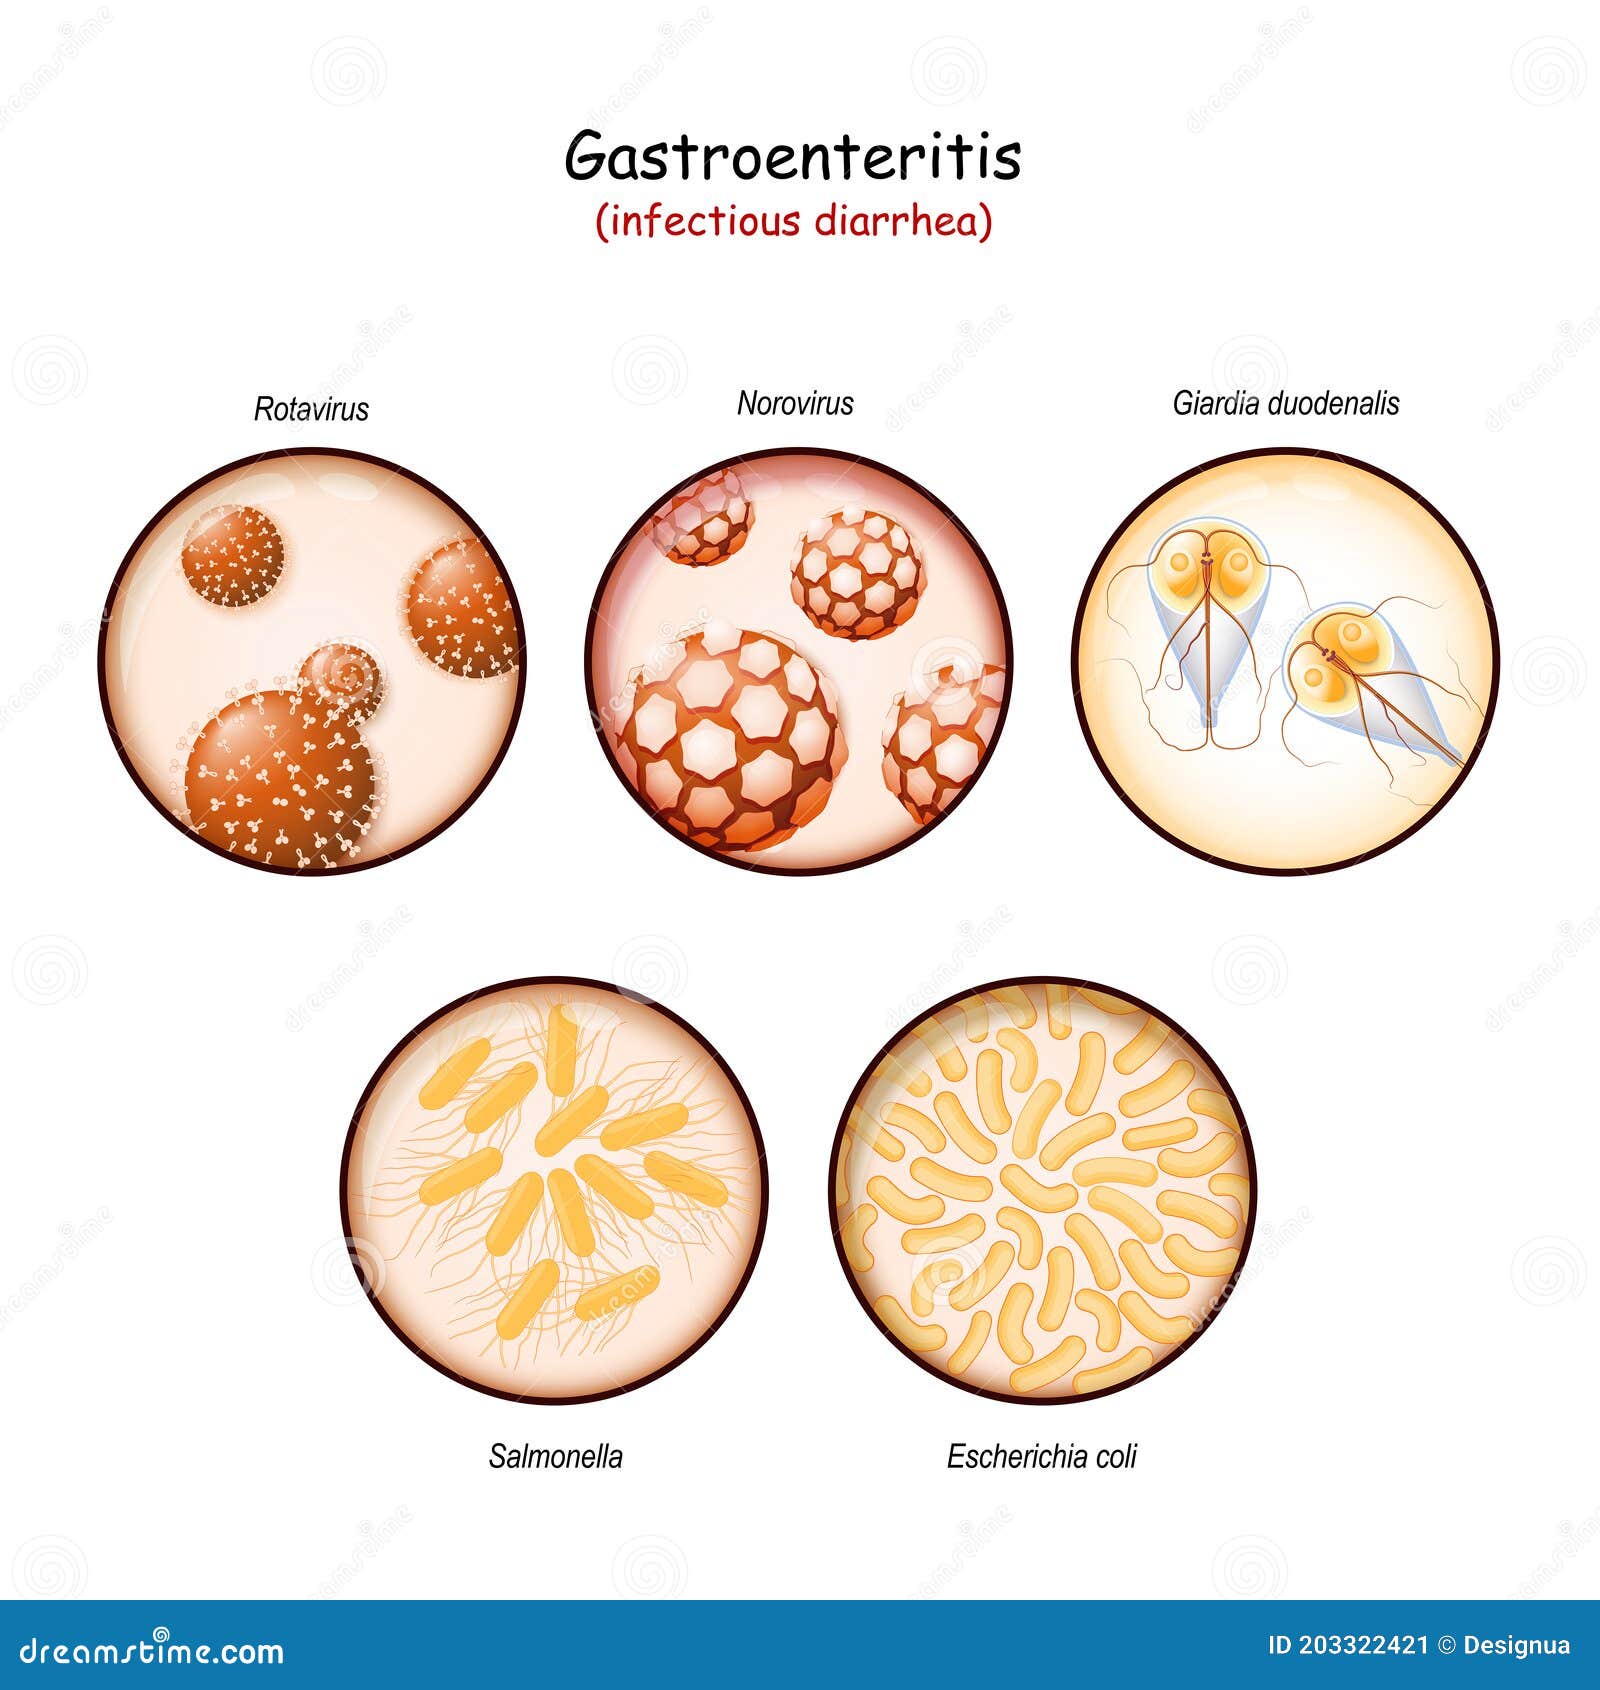 giardia vs gastroenteritis